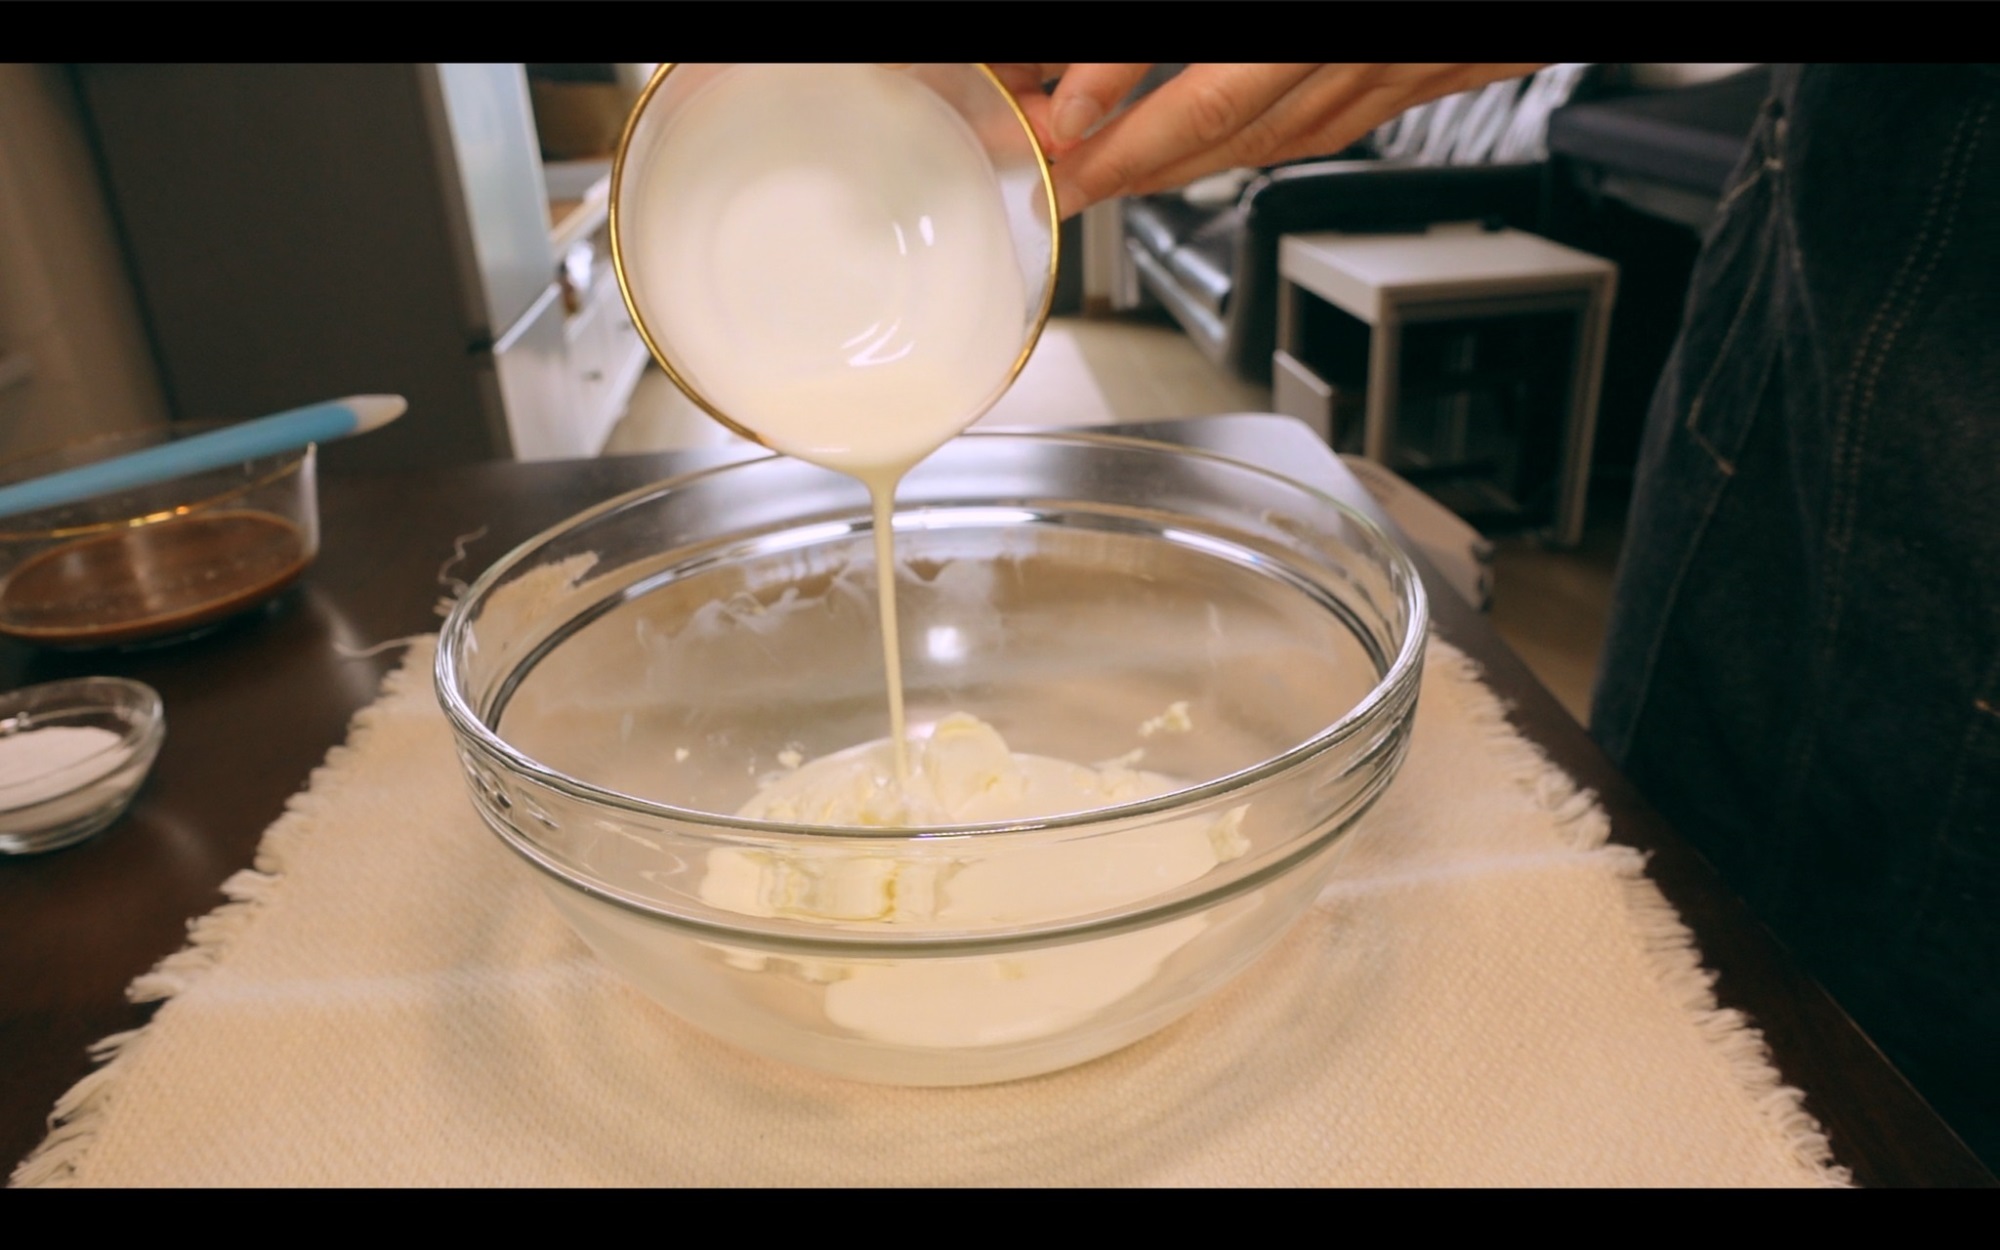 Công thức bánh Tiramisu siêu đơn giản, chị em nội trợ thử ngay món bánh ngon nức tiếng này!-2